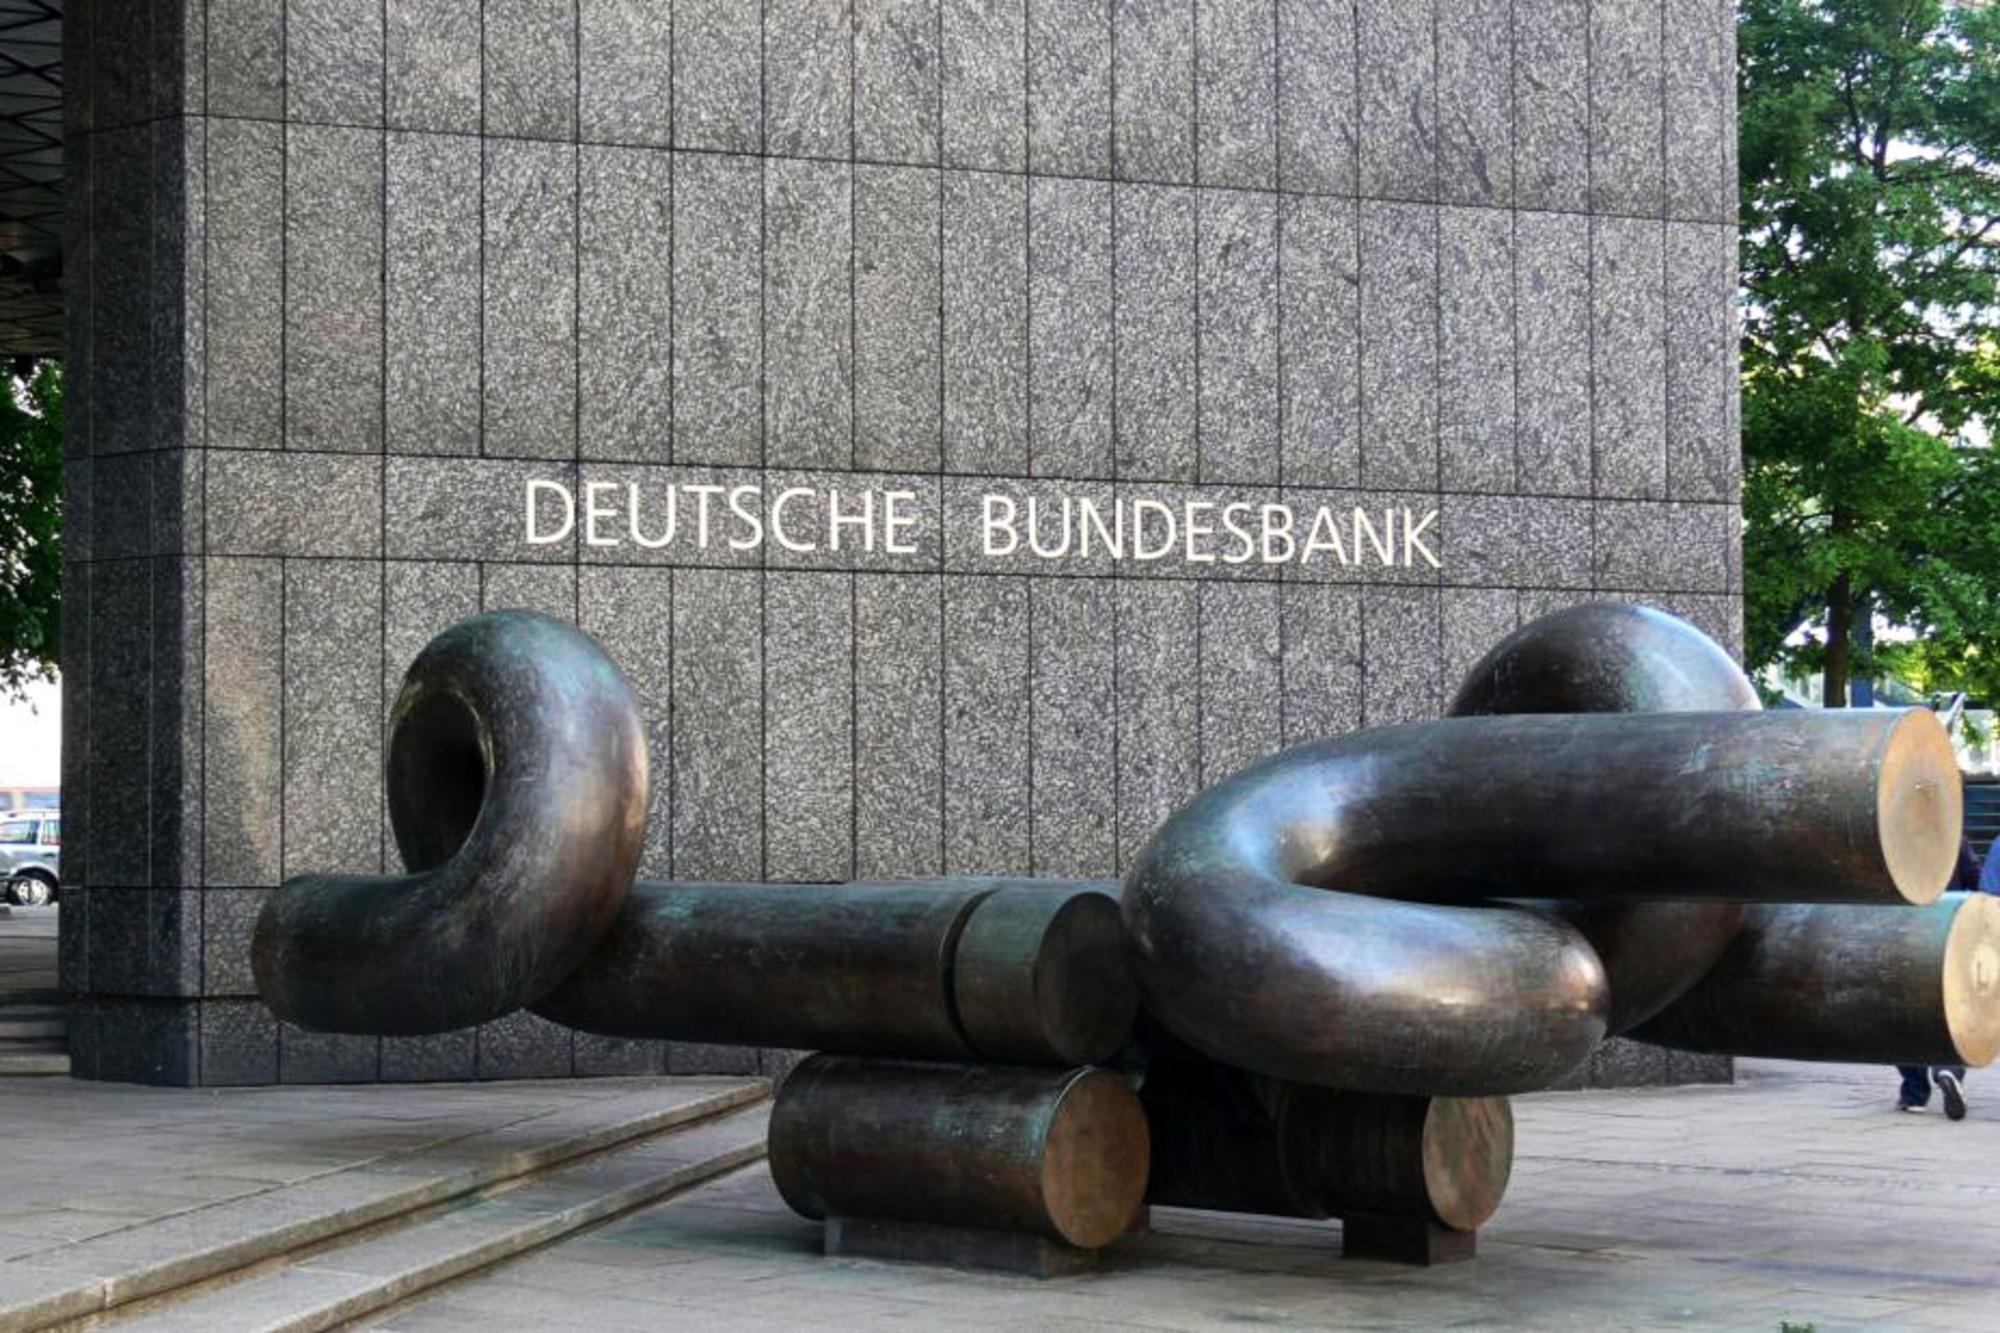 Puerta del Bundesbank